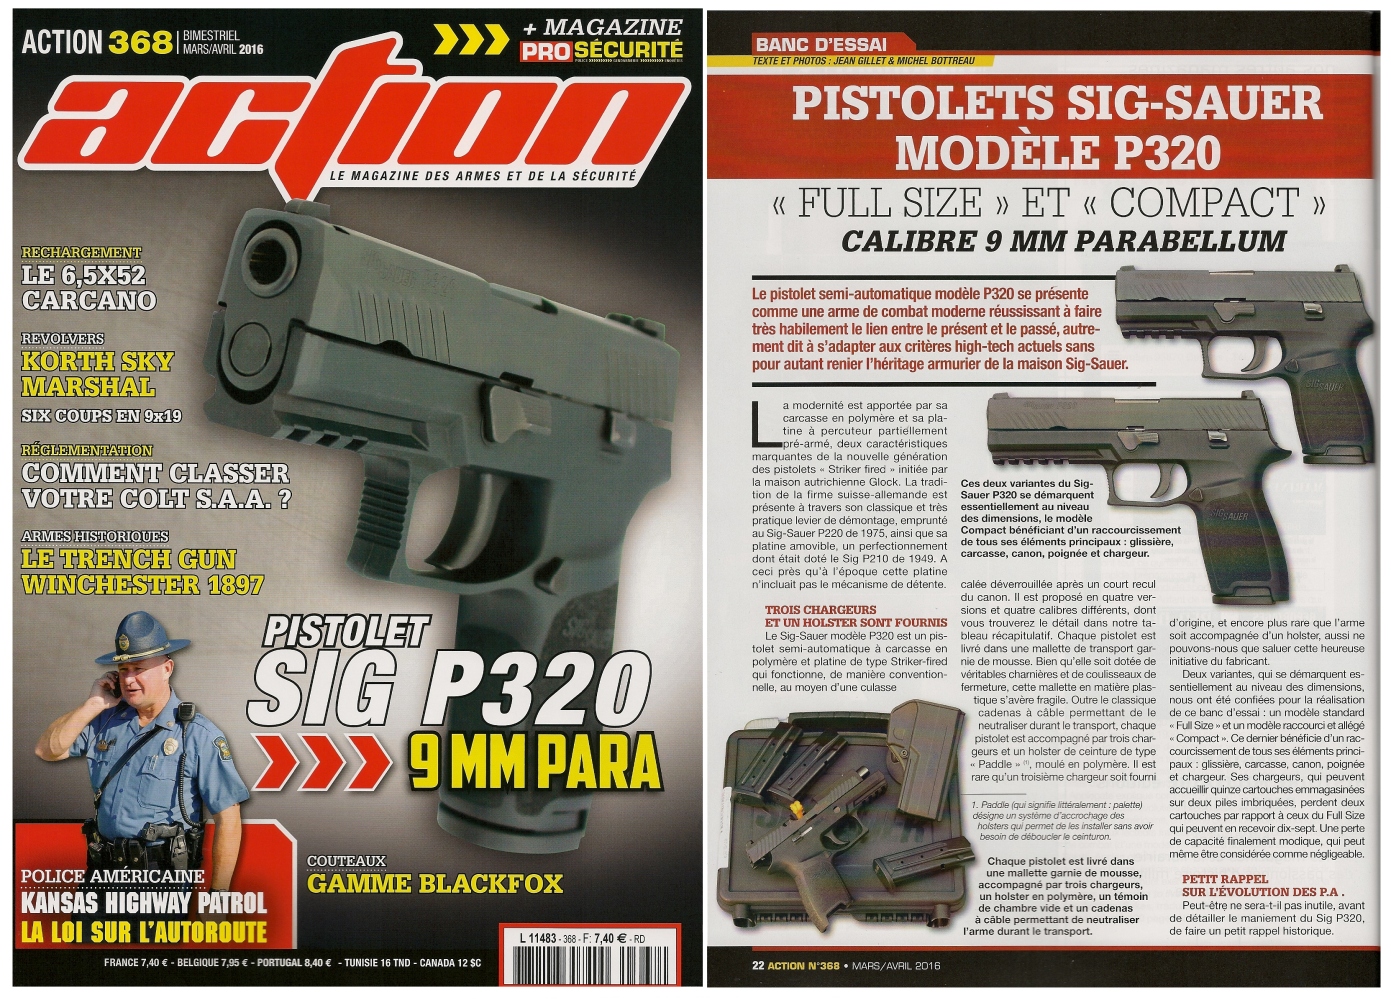 Le banc d'essai des pistolets Sig-Sauer P320 « Full size » et « Compact » a été publié sur 6 pages dans le magazine Action n°368 (mars/avril 2016) 